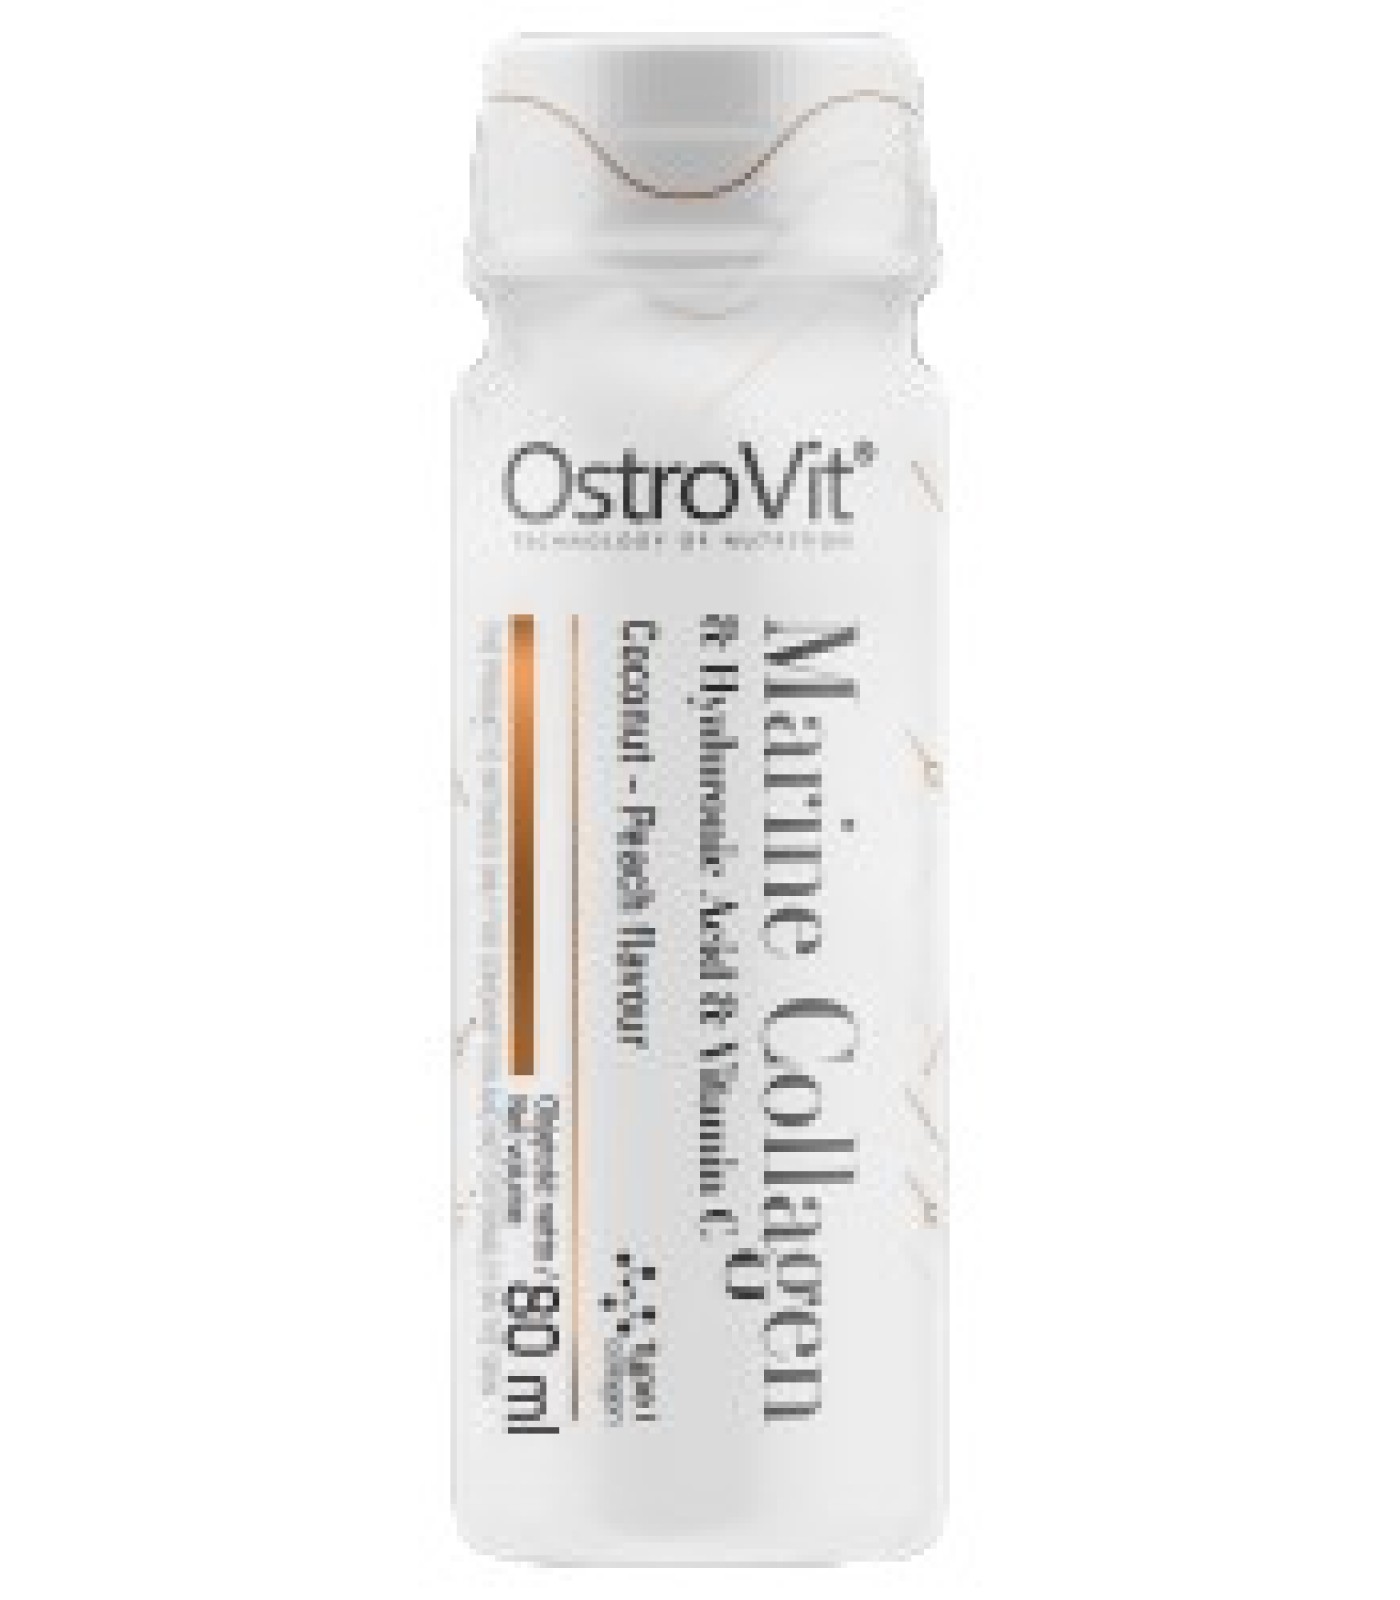 OstroVit - Marine Collagen Shot / 80 мл